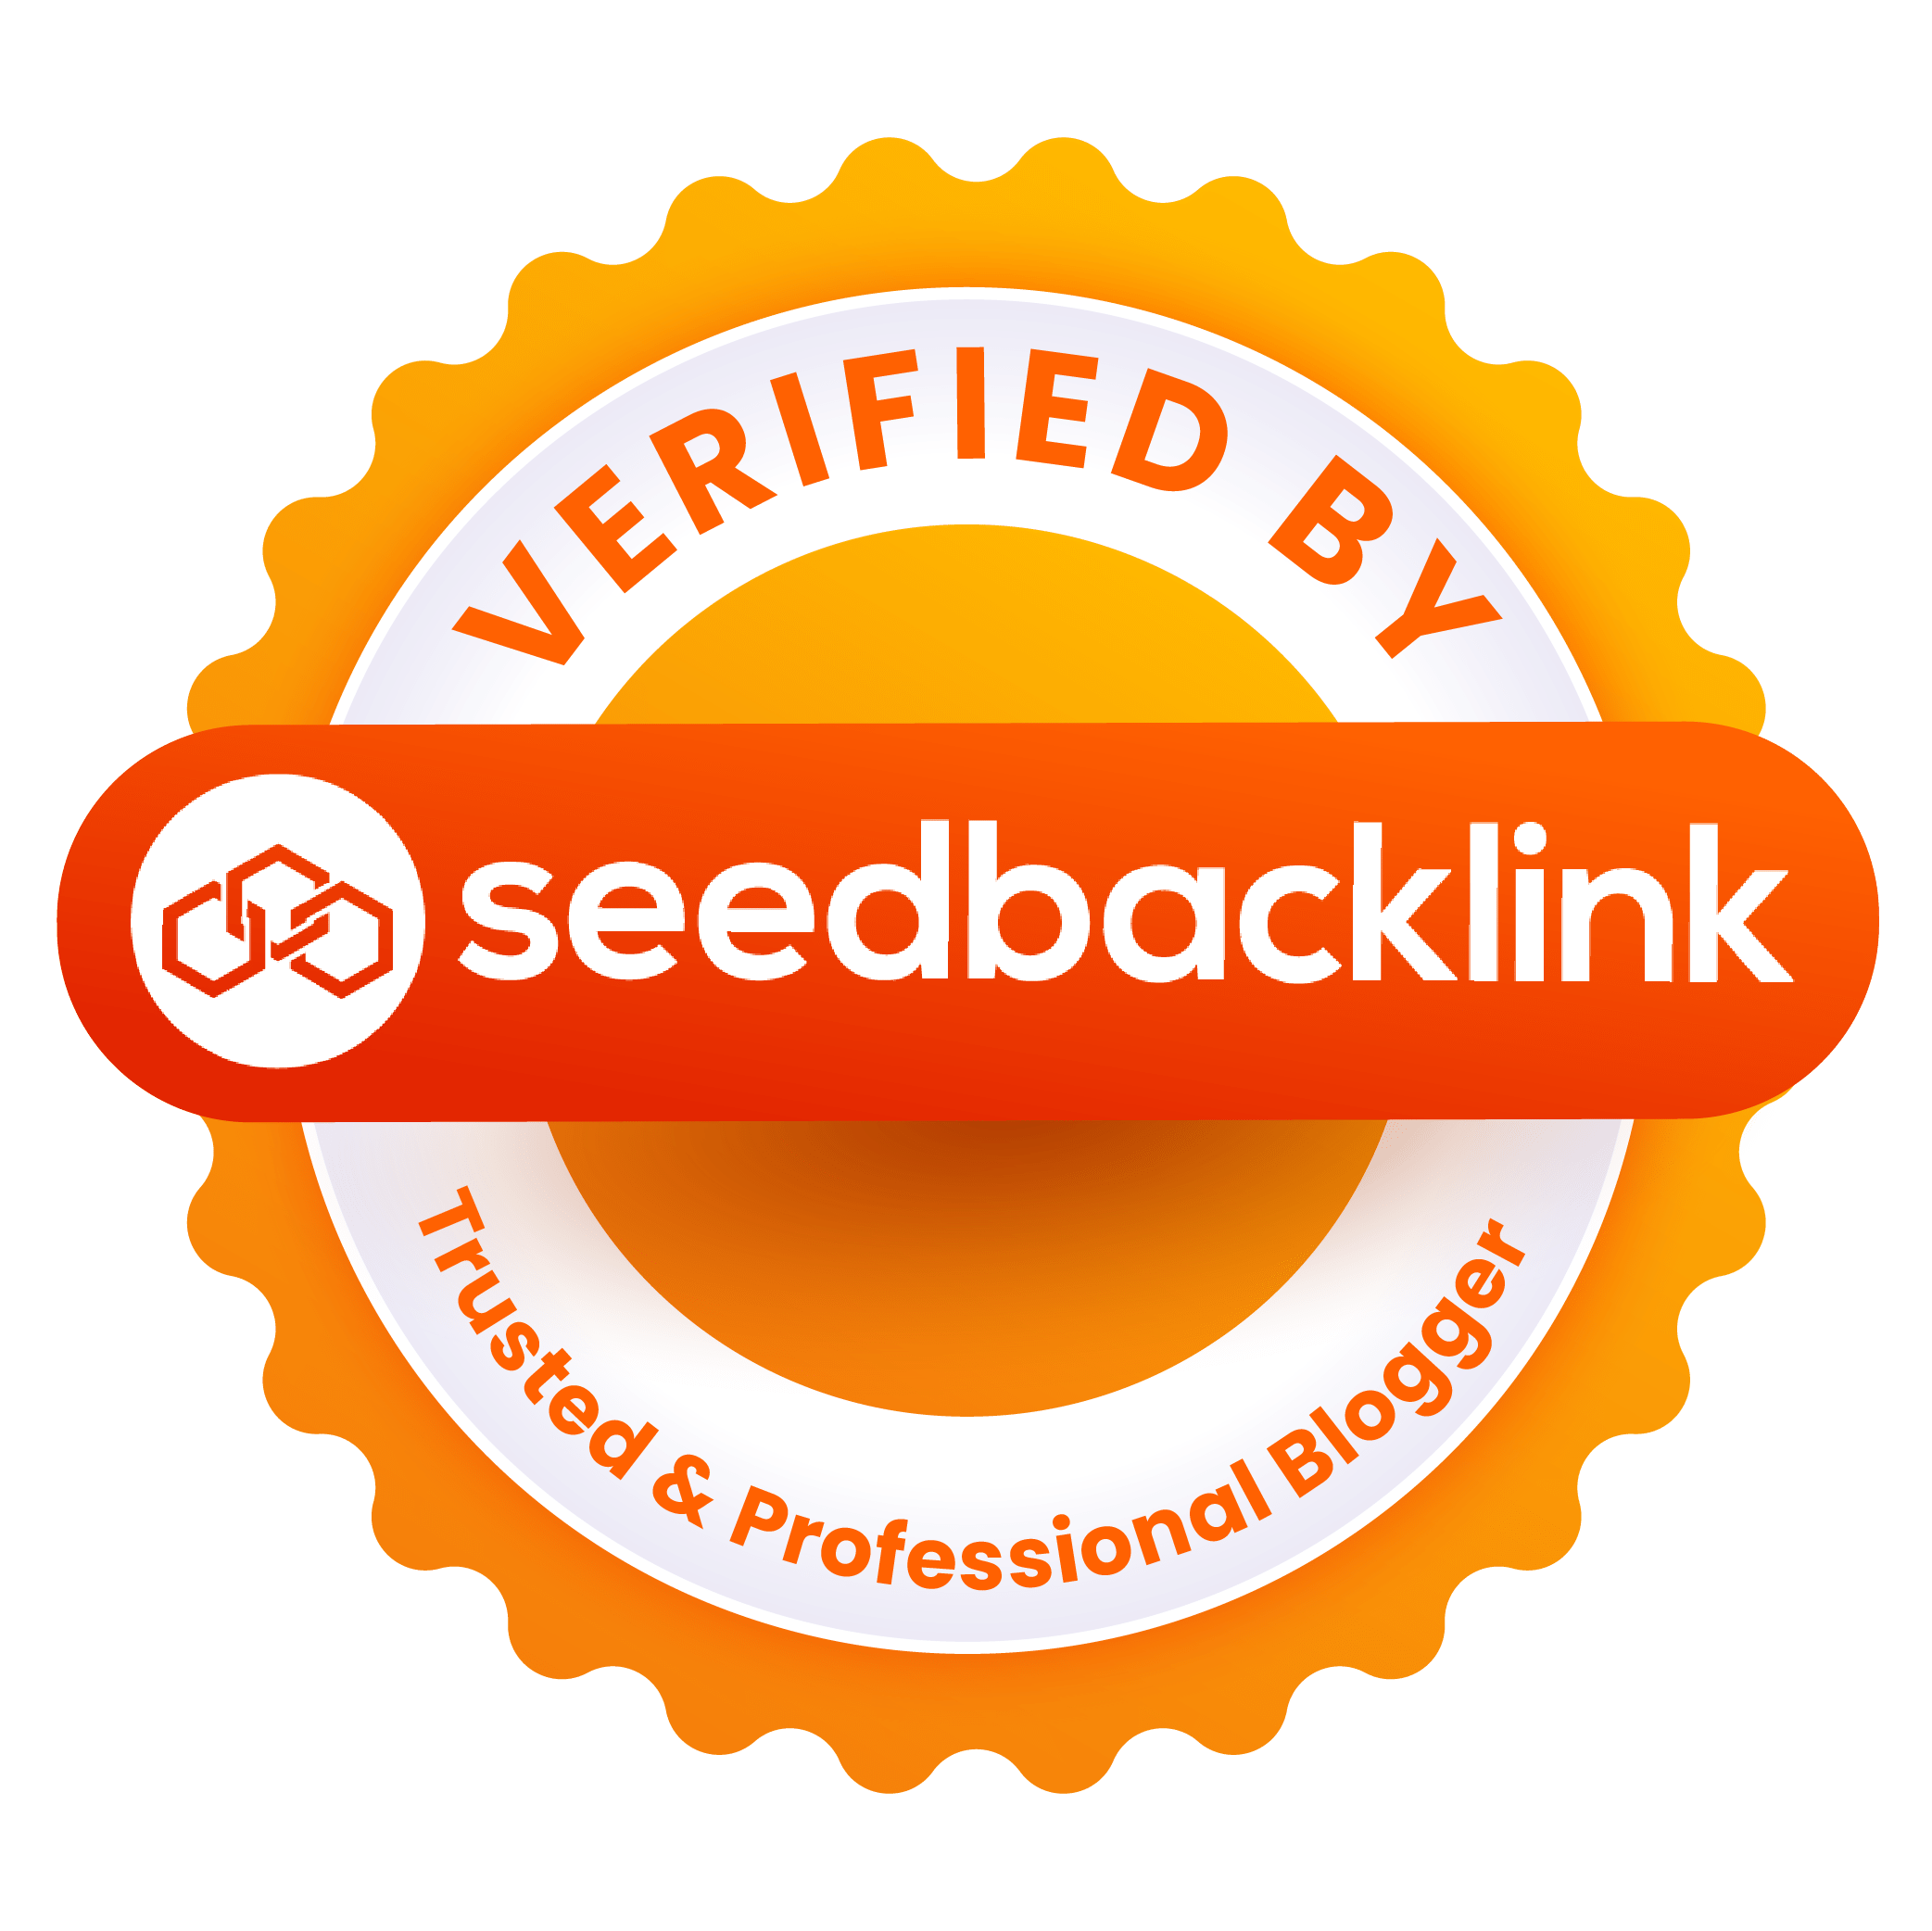 Seedbacklink